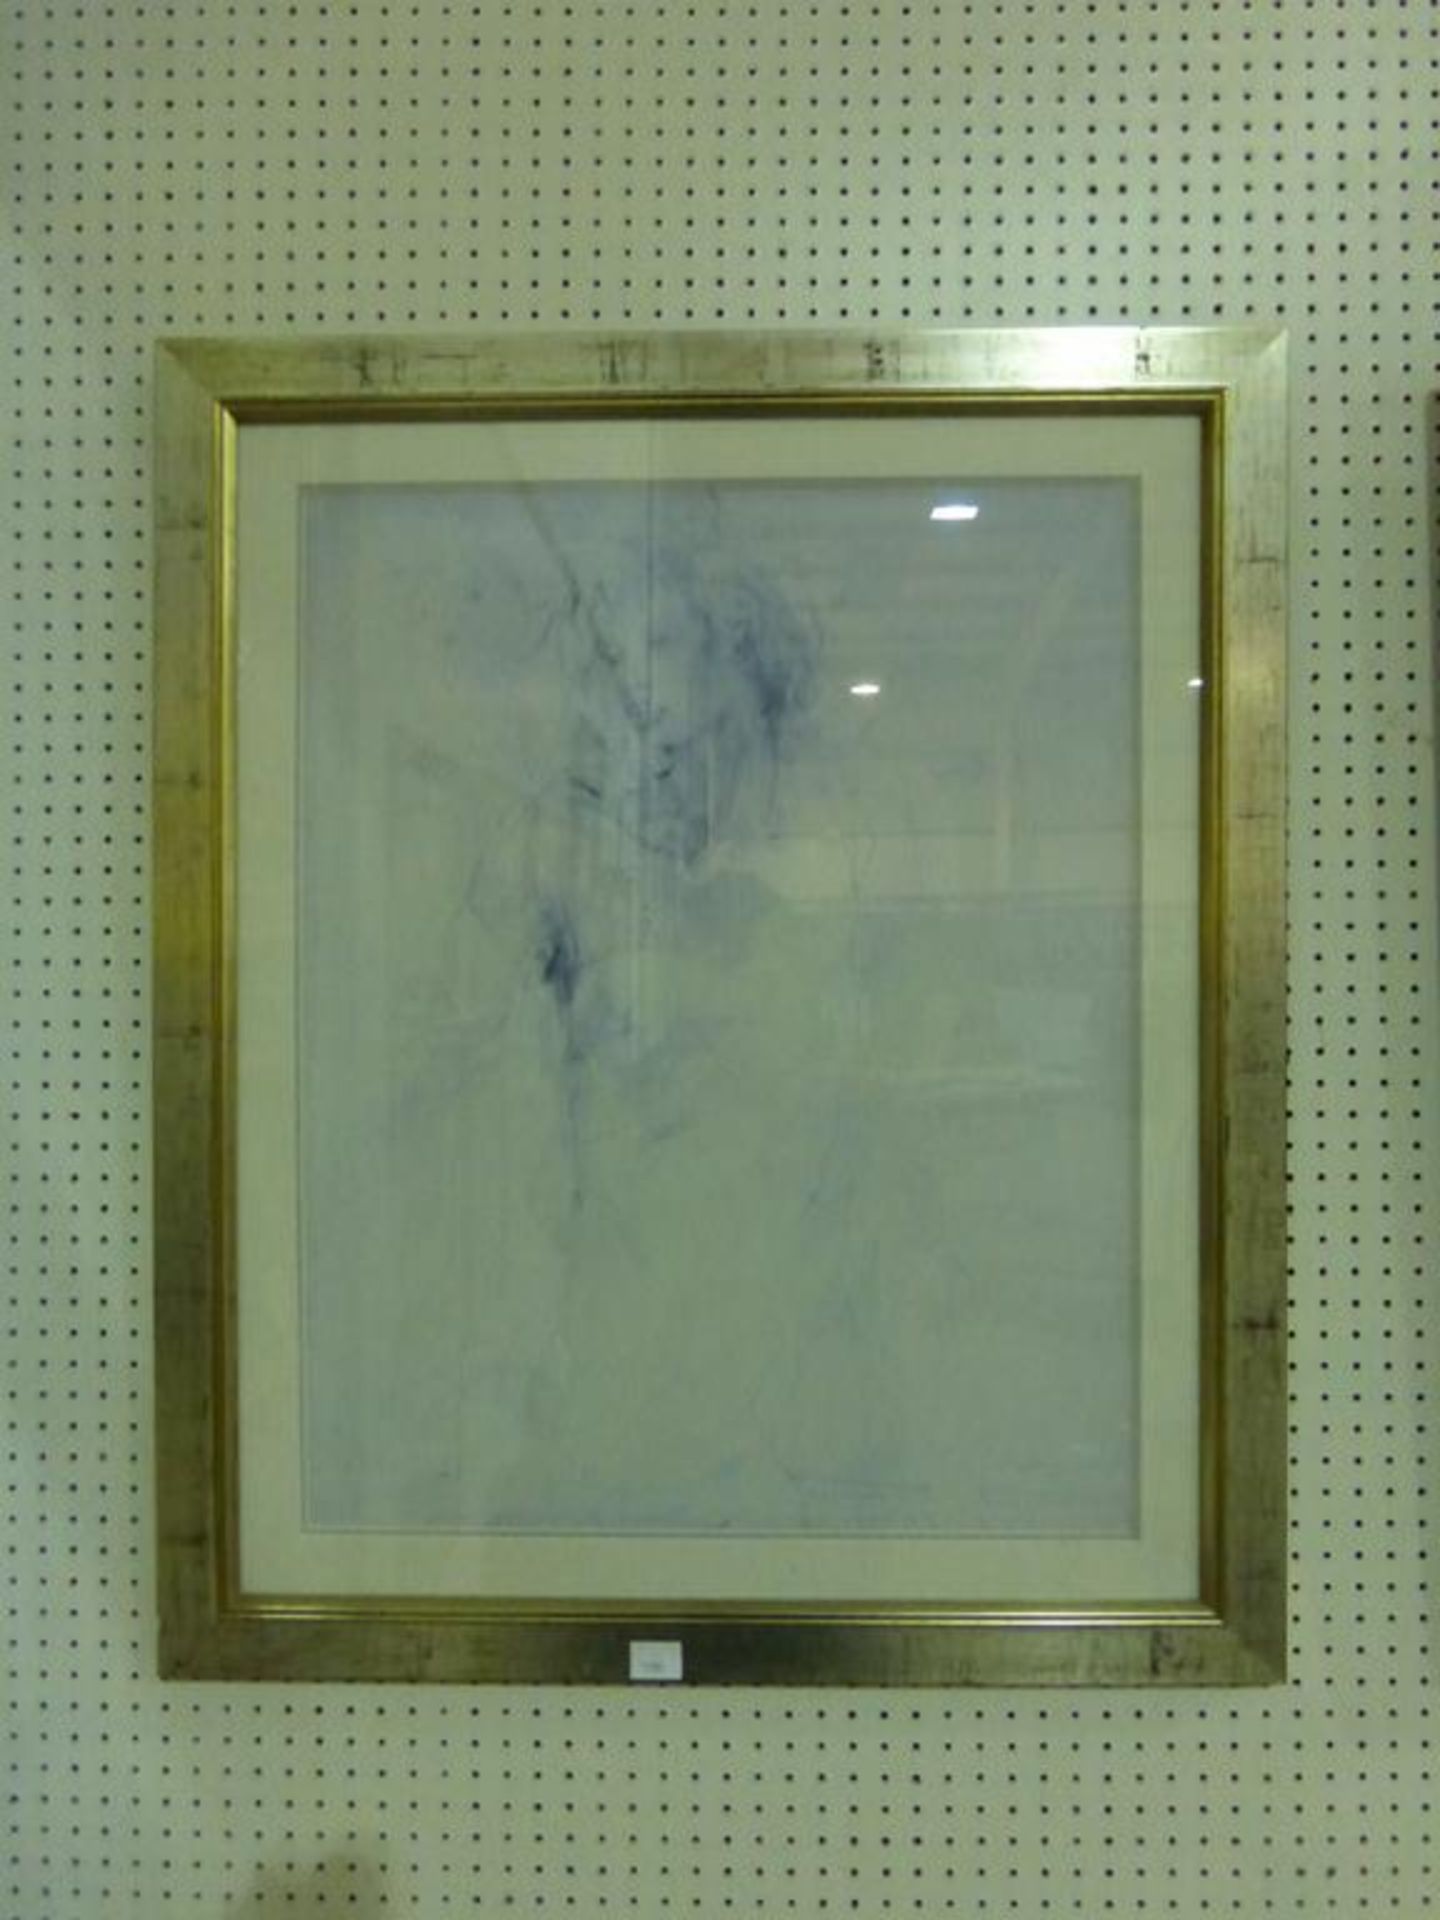 Pair of Jurgen Gorg Prints in rustic frames - Image 4 of 4